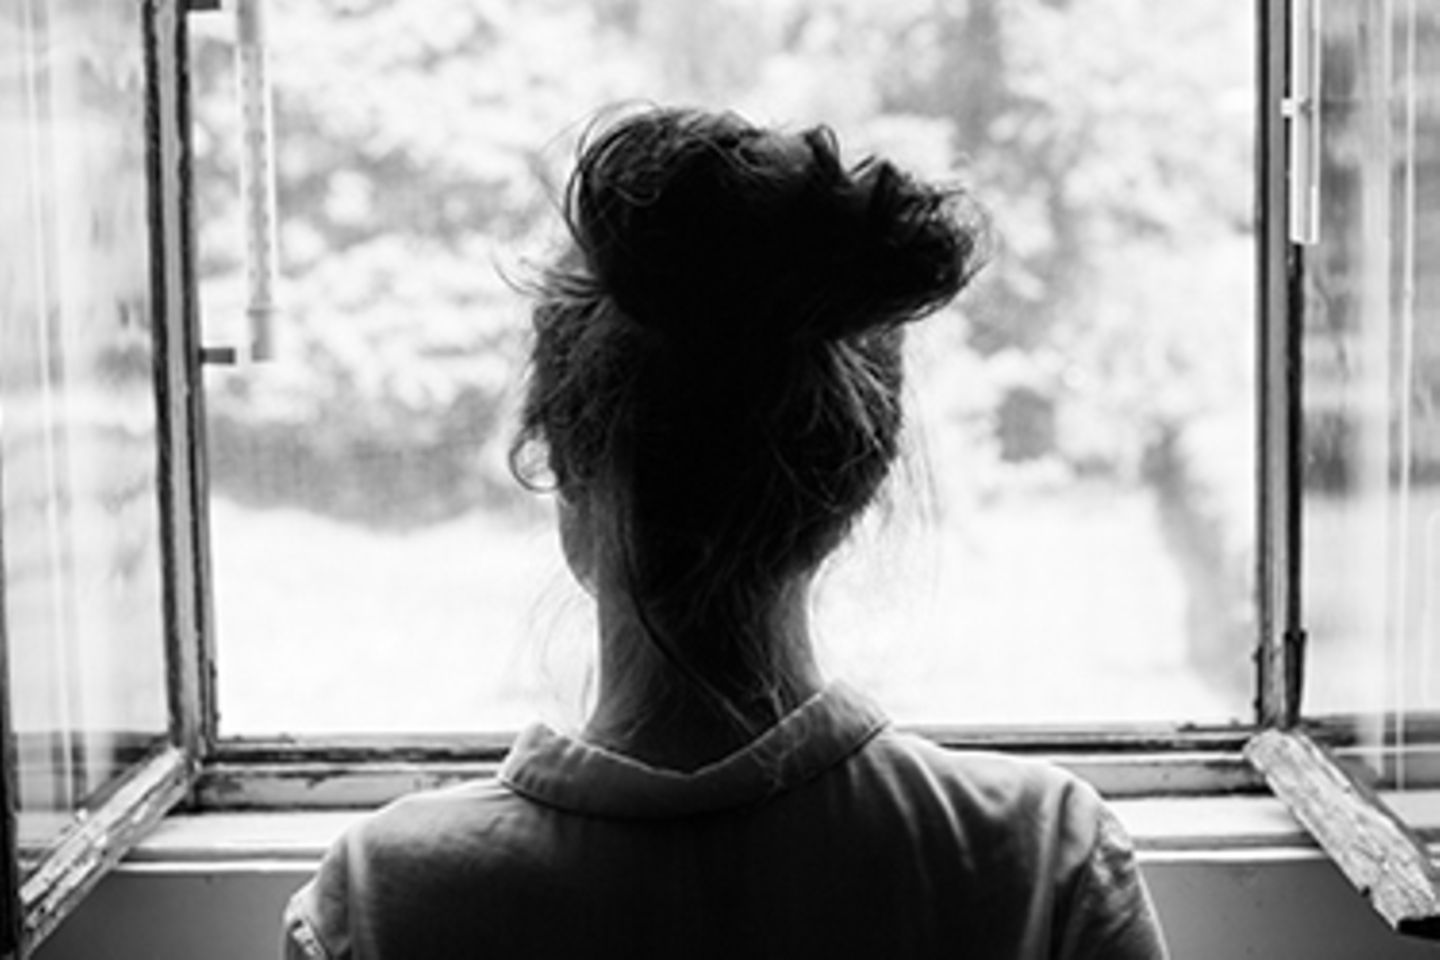 schwarz-weiß Bild einer Frau vor dem offenen Fenster